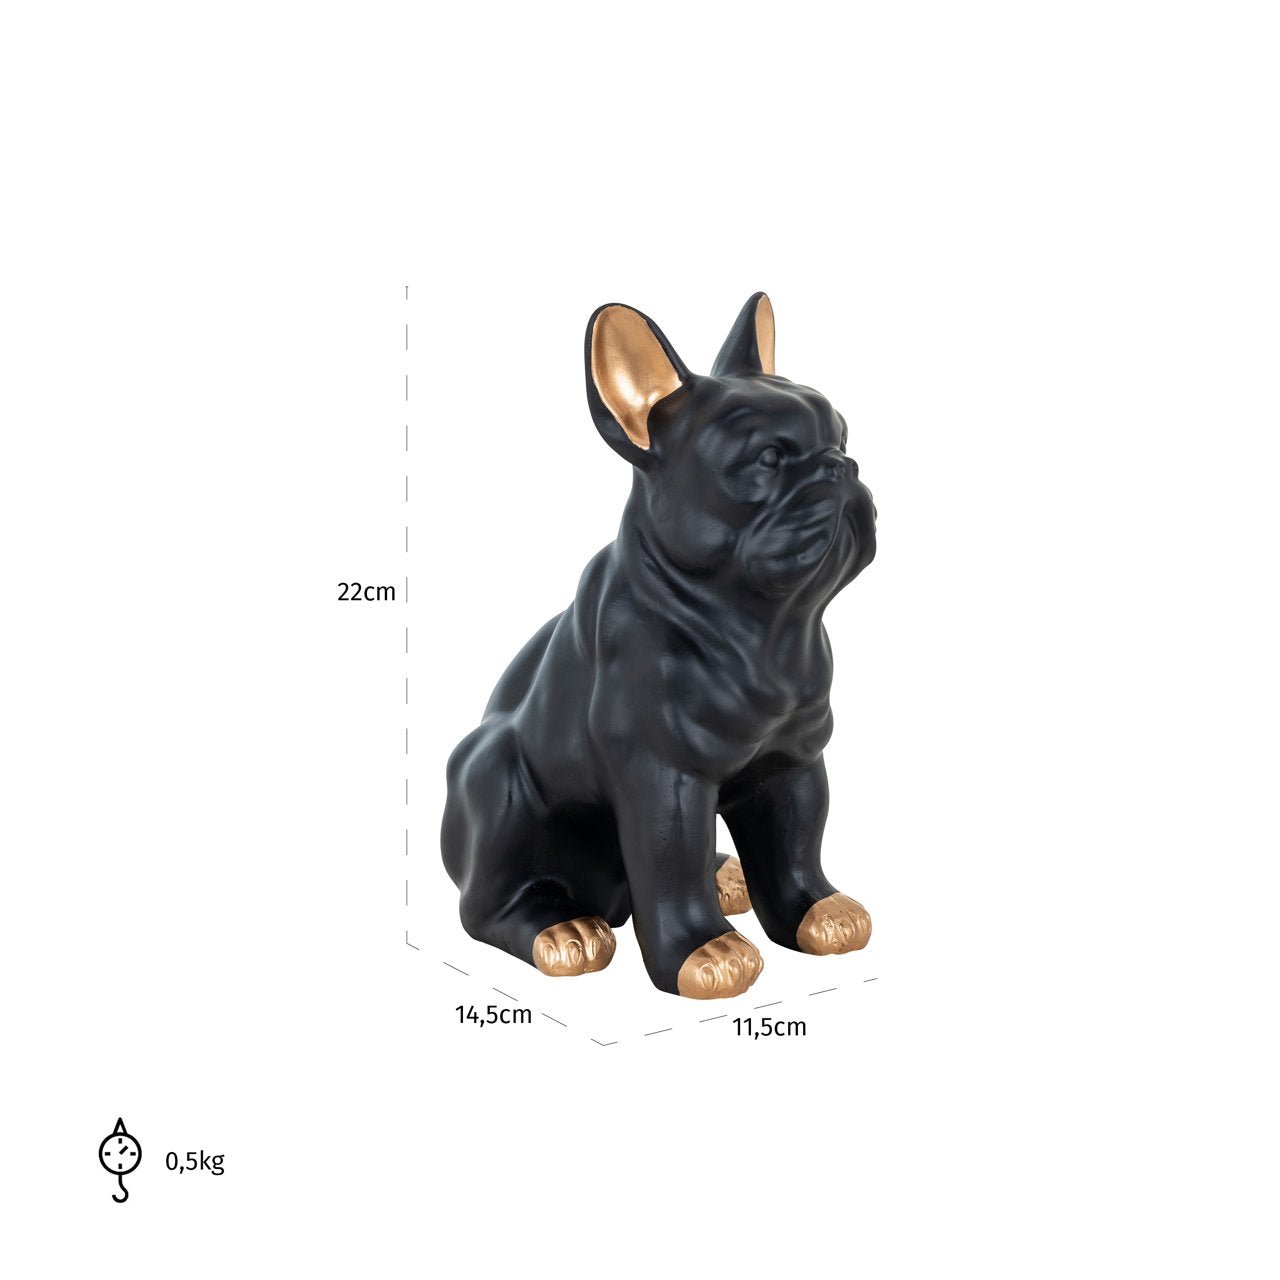 Maataanduiding van zittend frans bulldog beeldje in zwart en goudkleurig polyresin